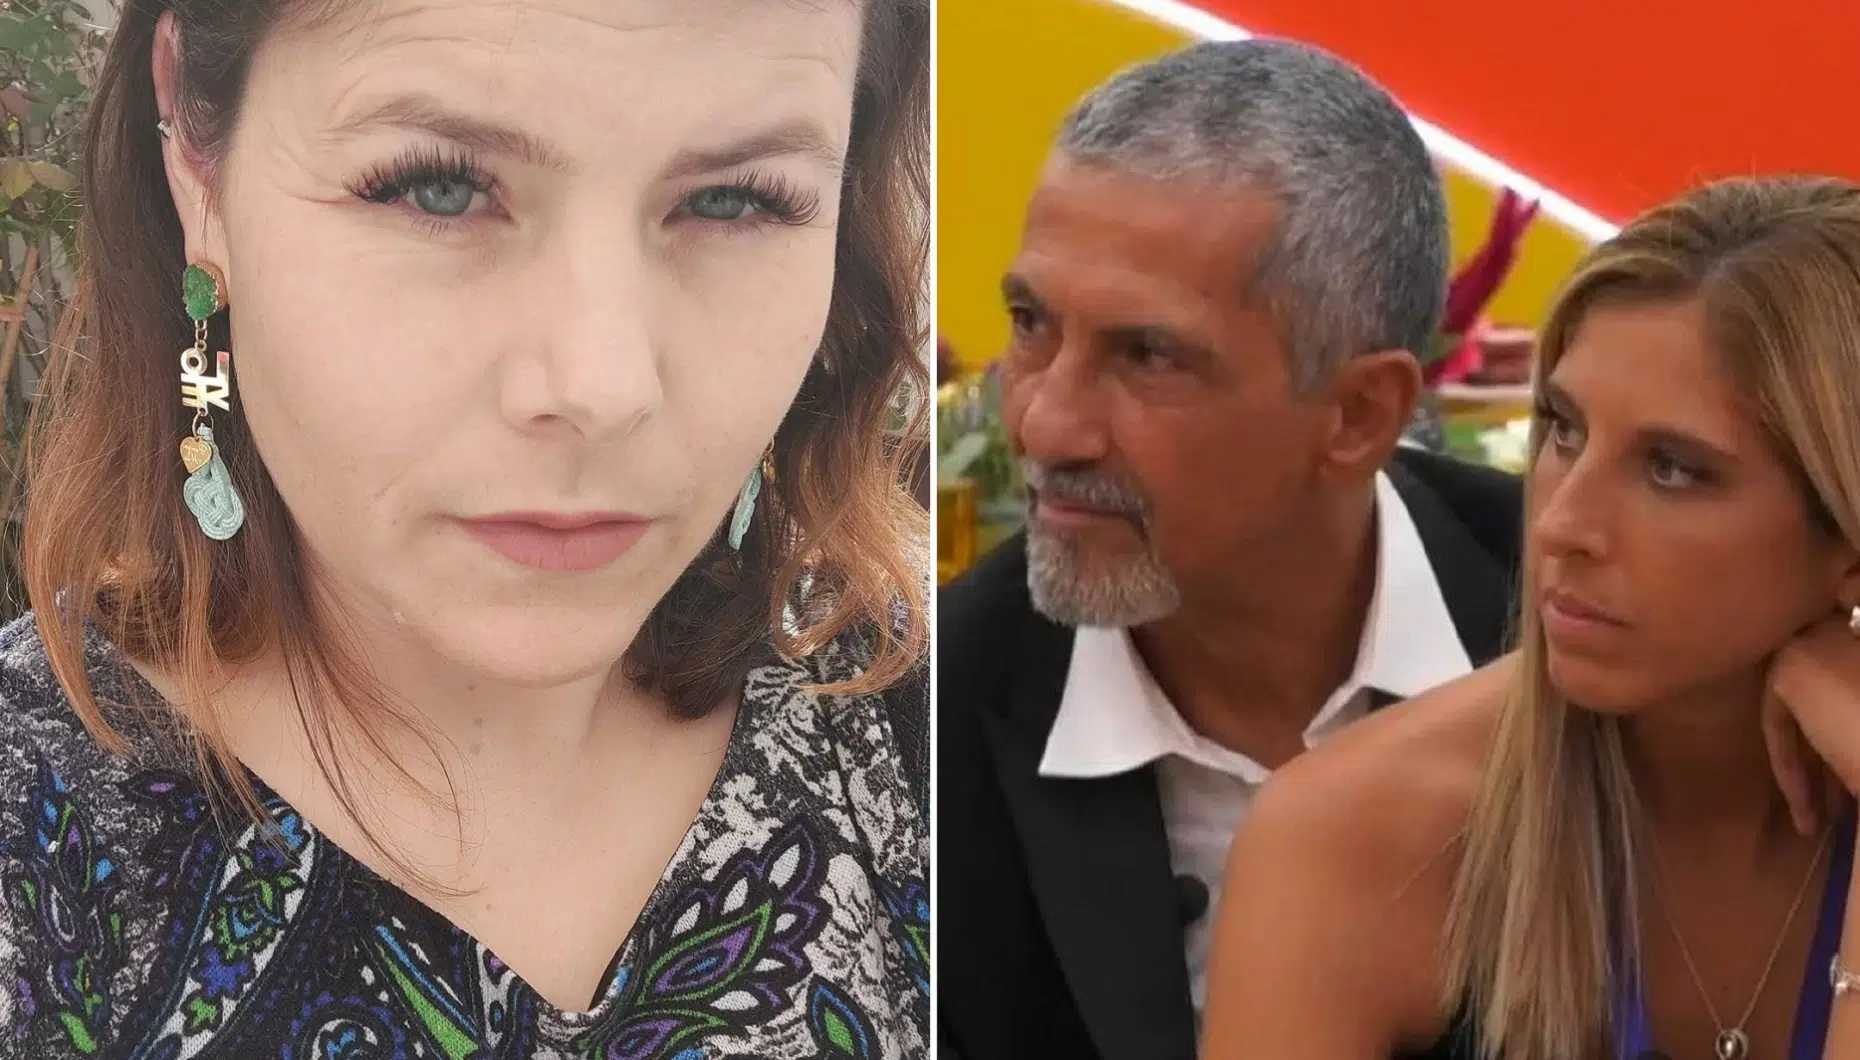 Noélia Pereira, Nuno Homem De Sá, Frederica Lima, Big Brother